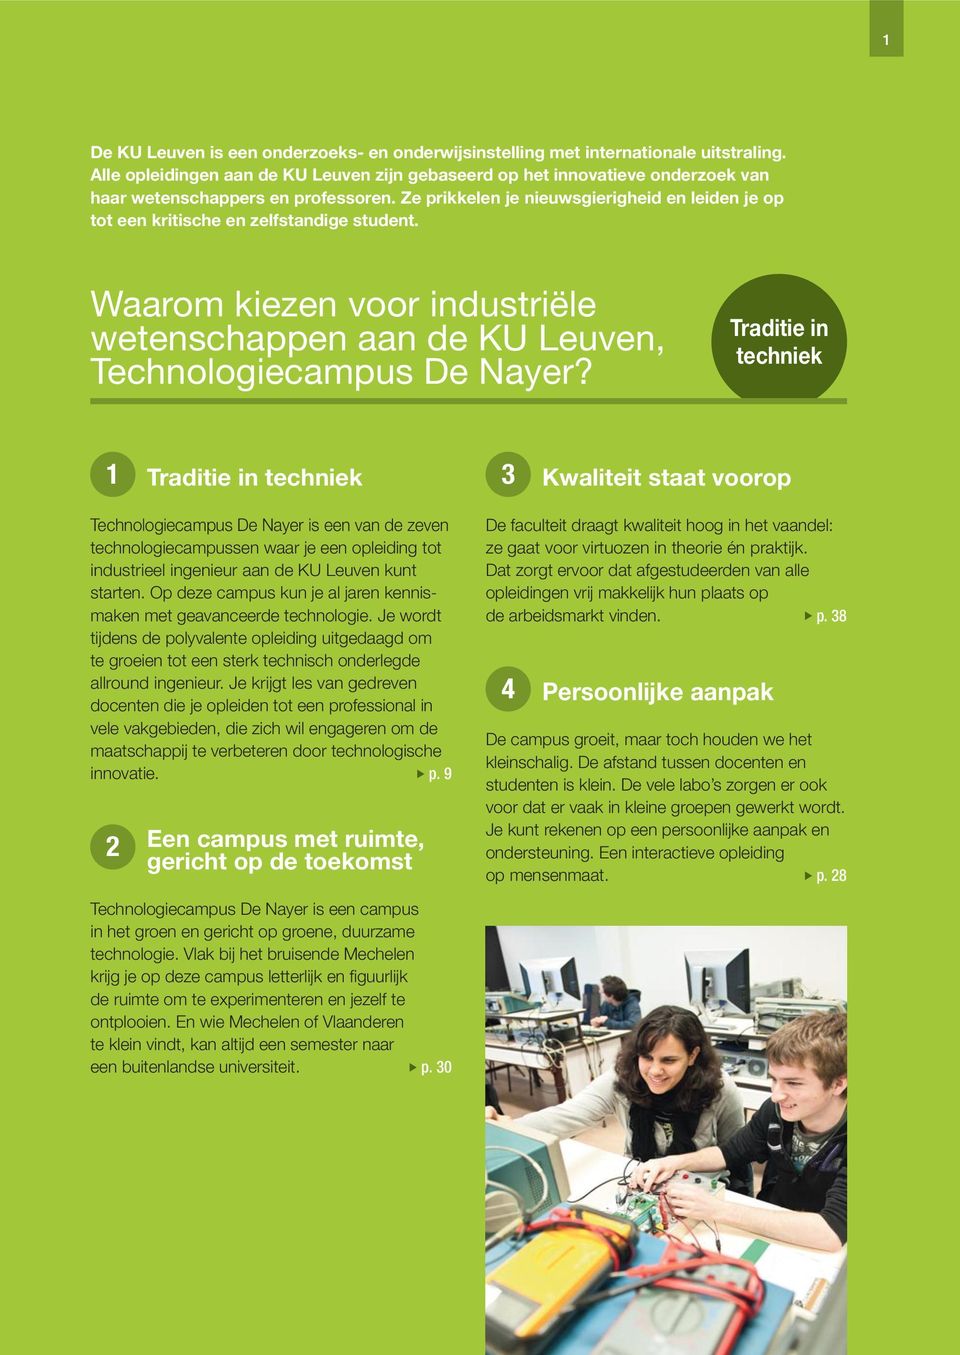 Ze prikkelen je nieuwsgierigheid en leiden je op tot een kritische en zelfstandige student. Waarom kiezen voor industriële wetenschappen aan de KU Leuven, Technologiecampus De Nayer?